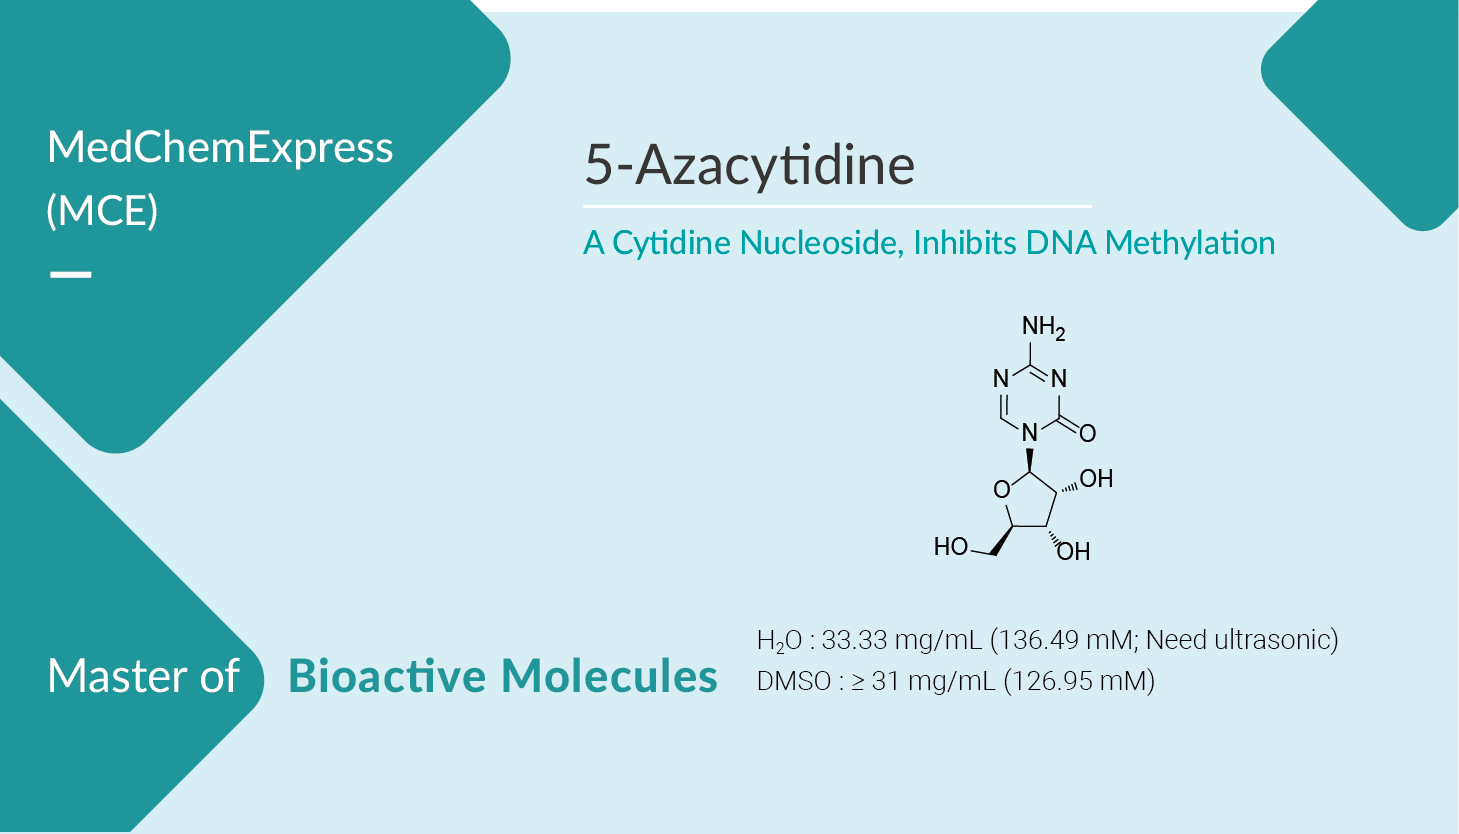 5-Azacytidine, a Nucleoside Analogue of Cytidine, Inhibits DNA Methylation